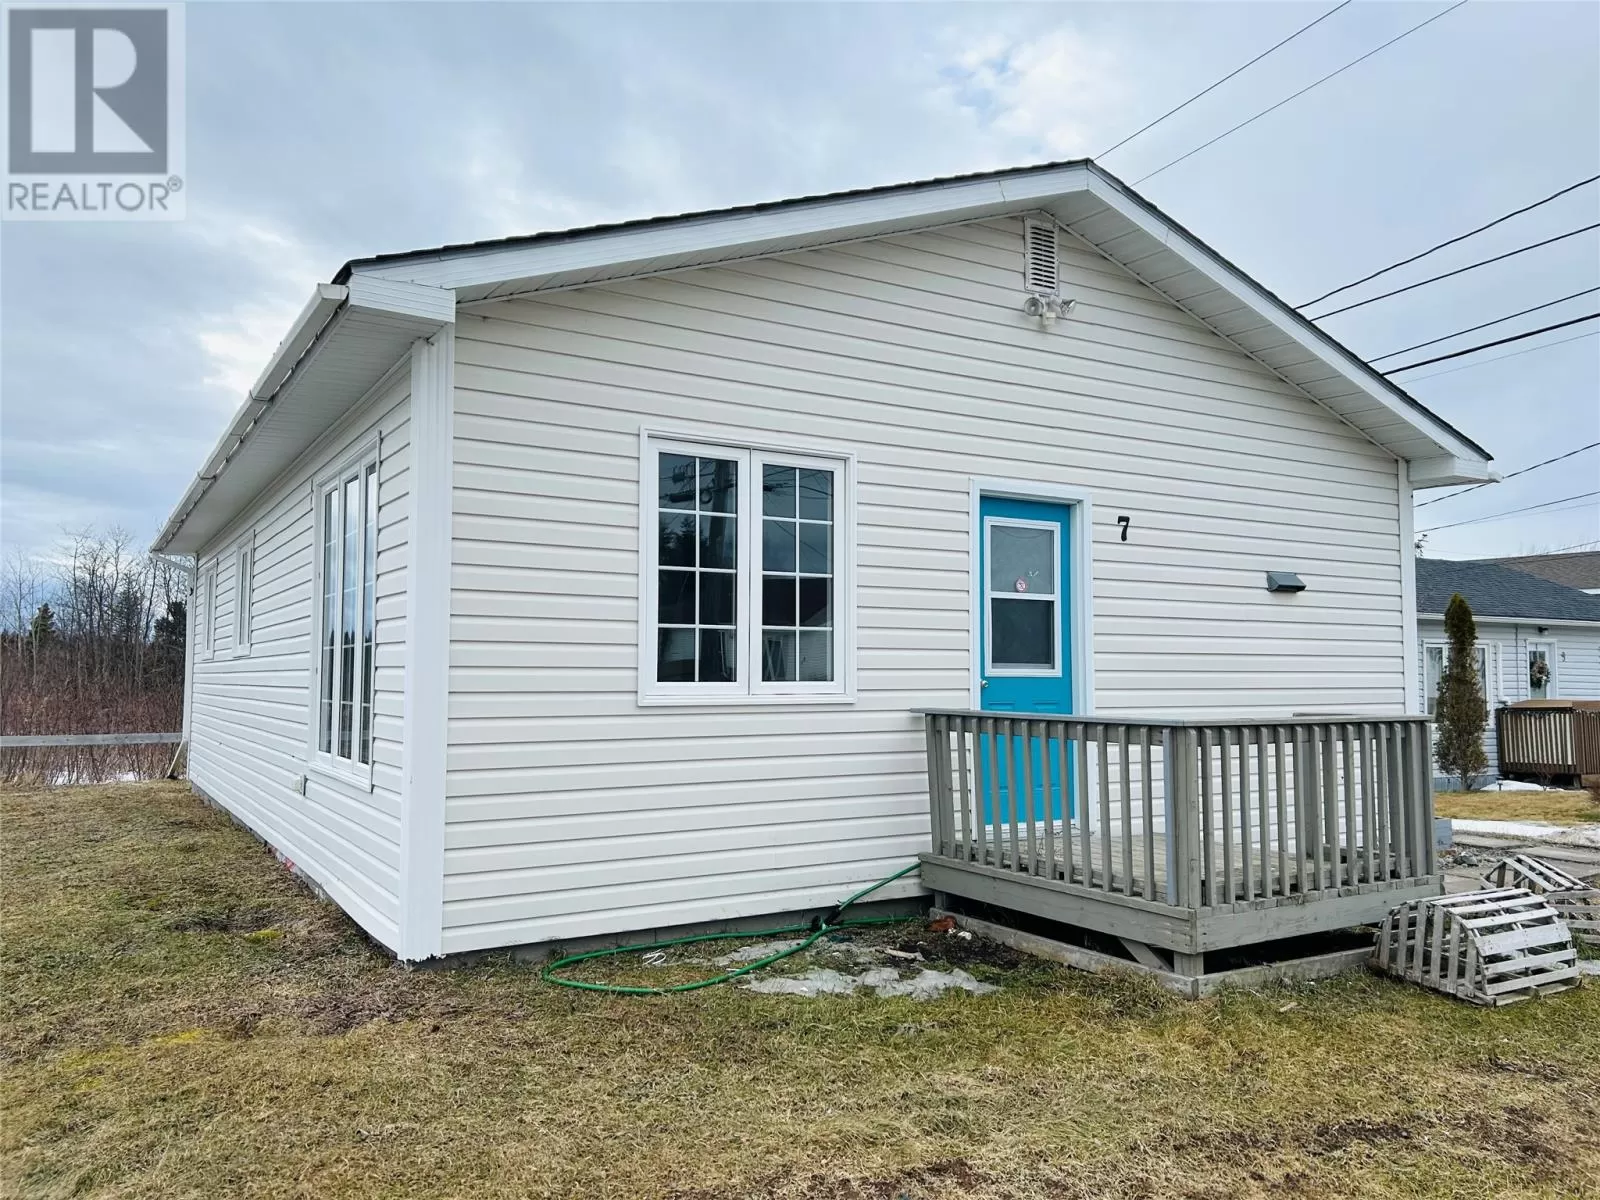 House for rent: 7 Whitmore Street, Grand Falls-Windsor, Newfoundland & Labrador A2B 1C1